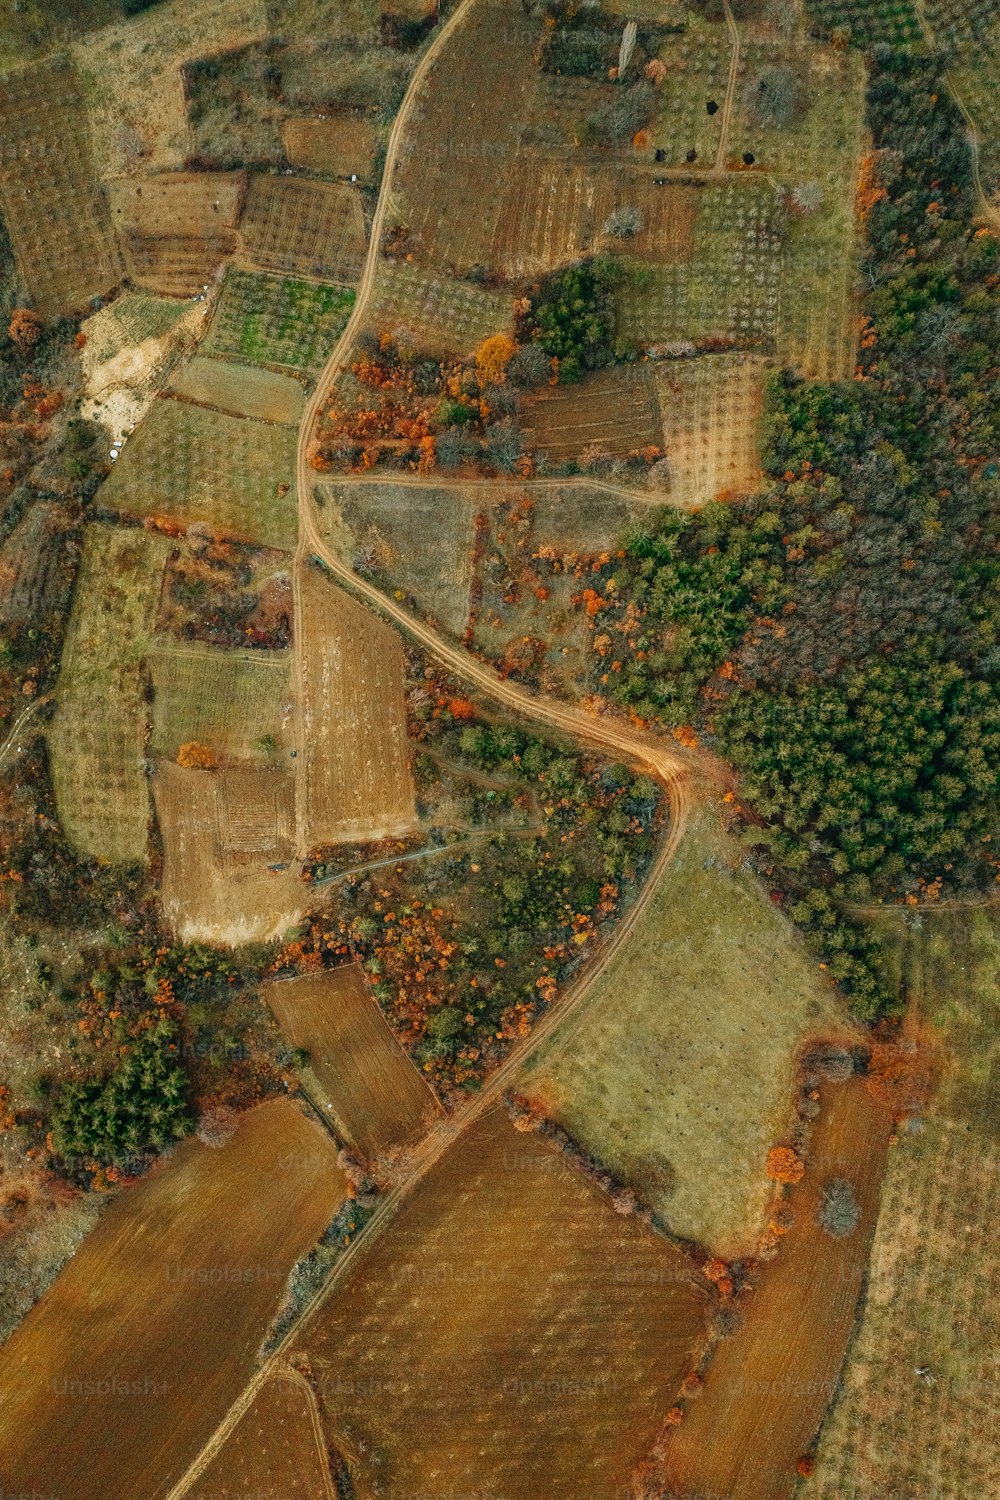 Una vista aérea de una zona rural con muchos árboles